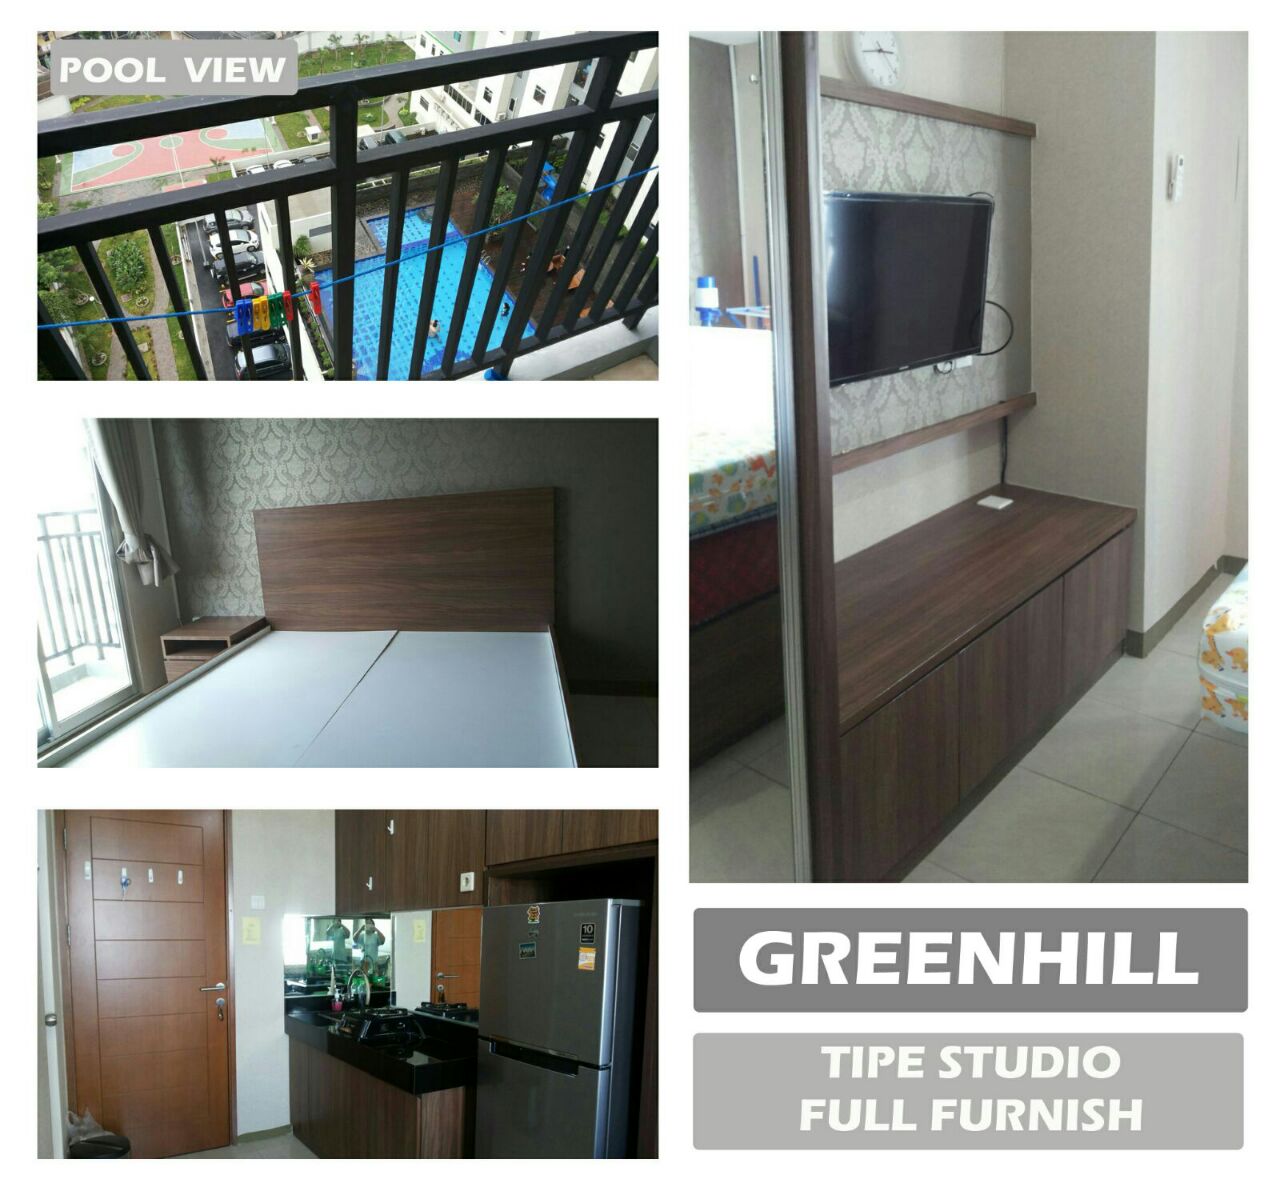 Apartemen Greenhill Fullfurnish Corner Studio Pool View Desain